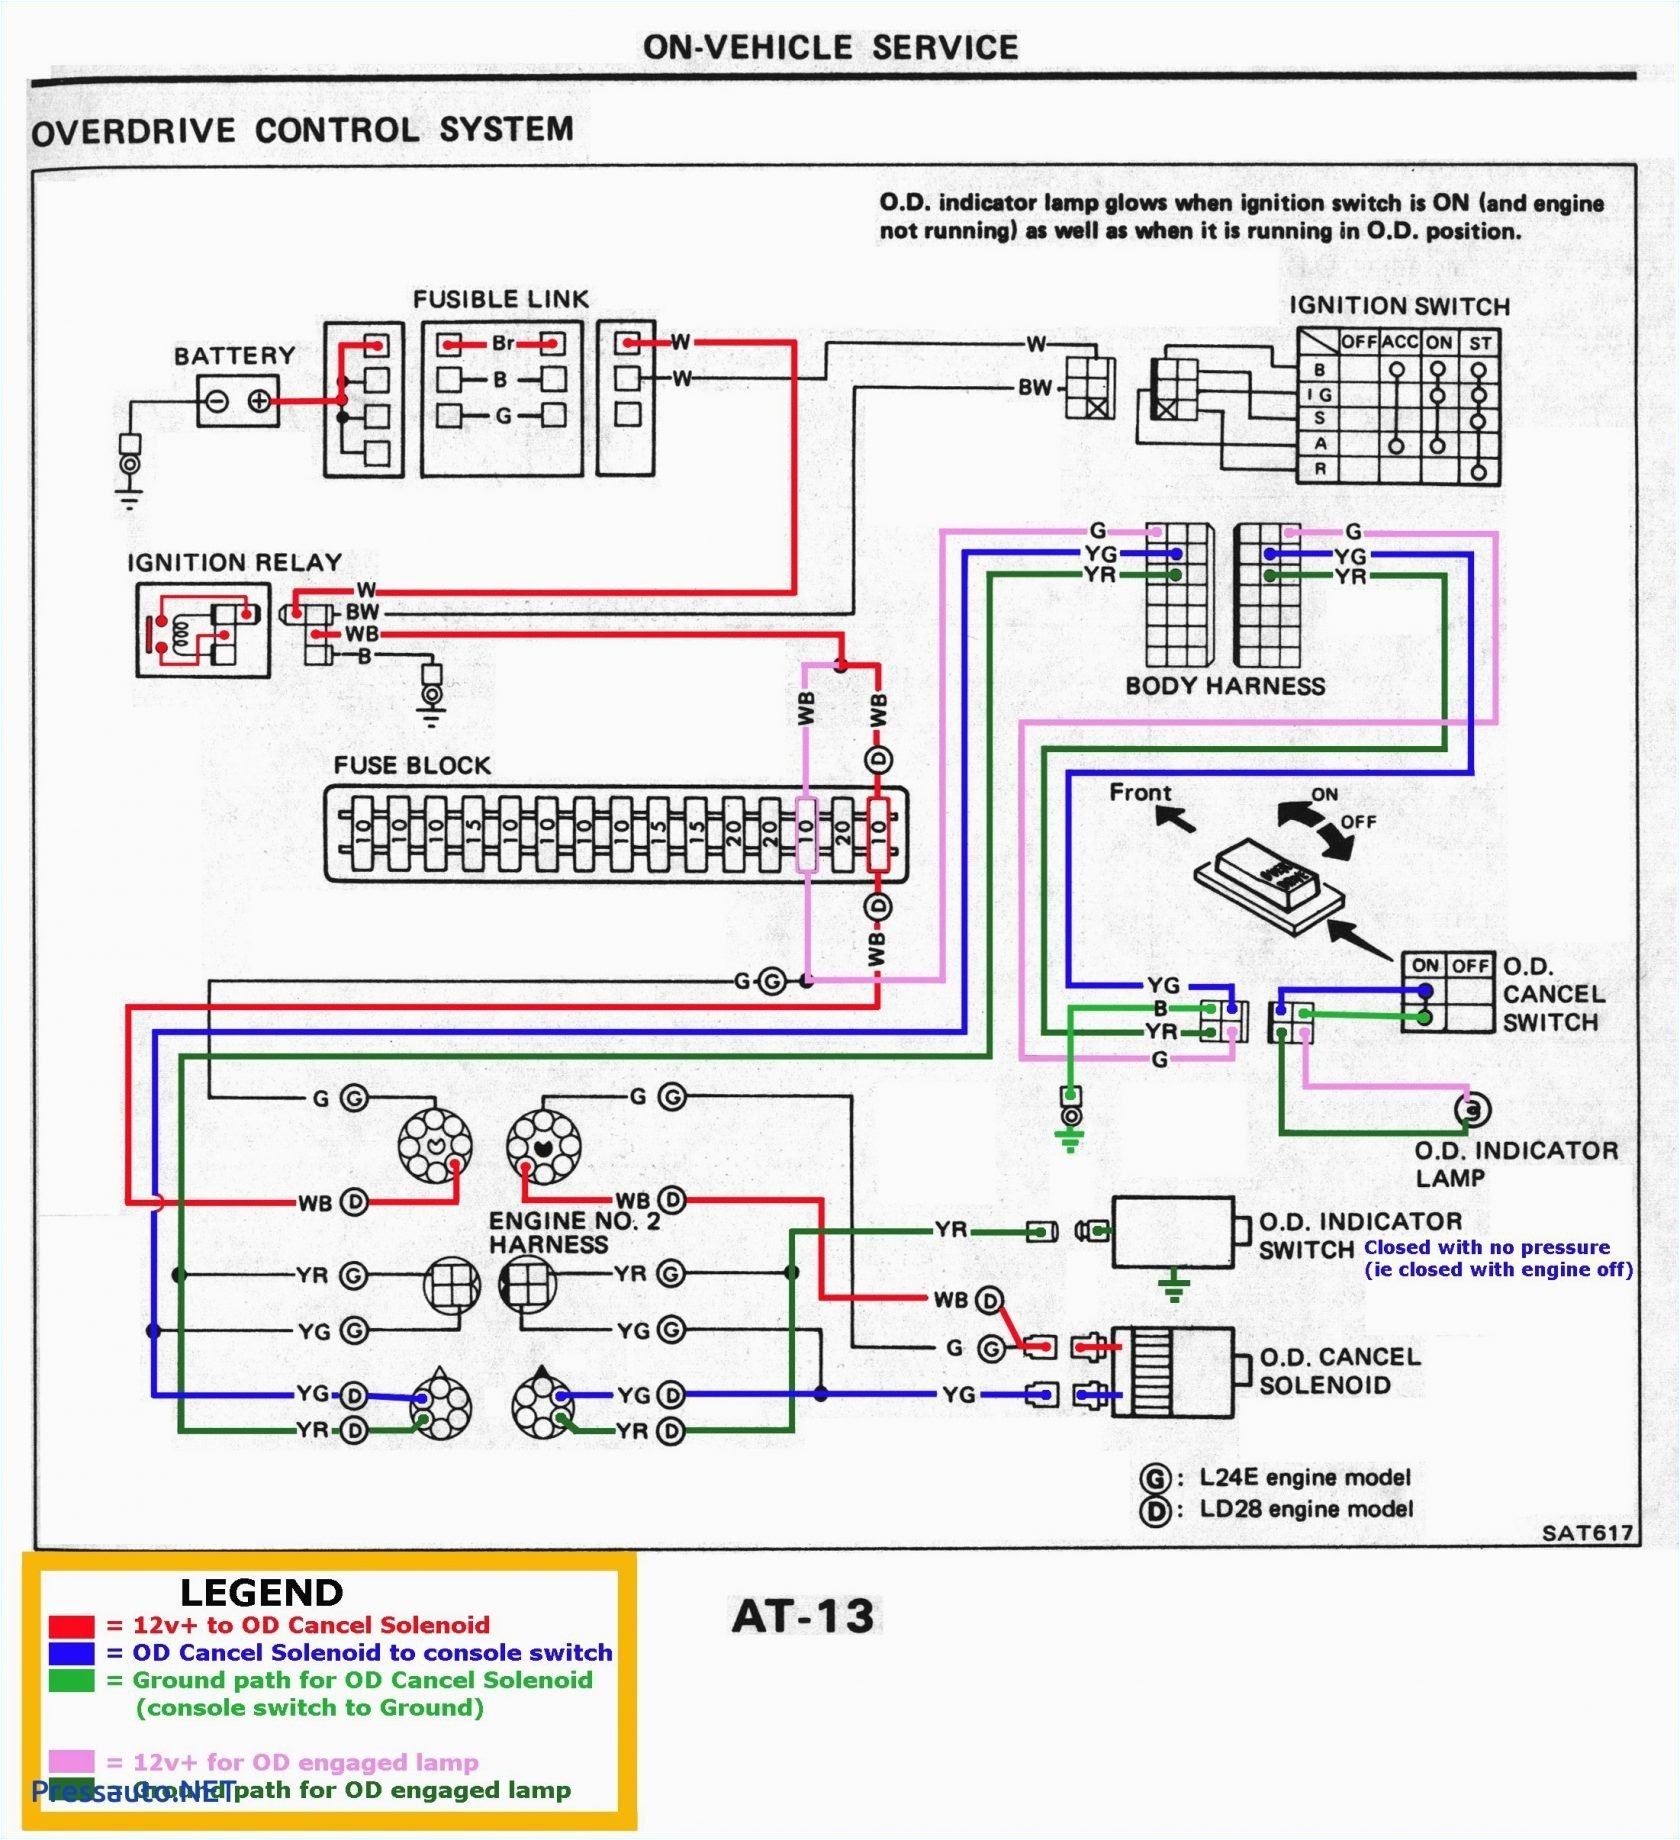 Dc Circuit Breaker Wiring Diagram Mag O Wiring Diagram Wiring Diagram toolbox